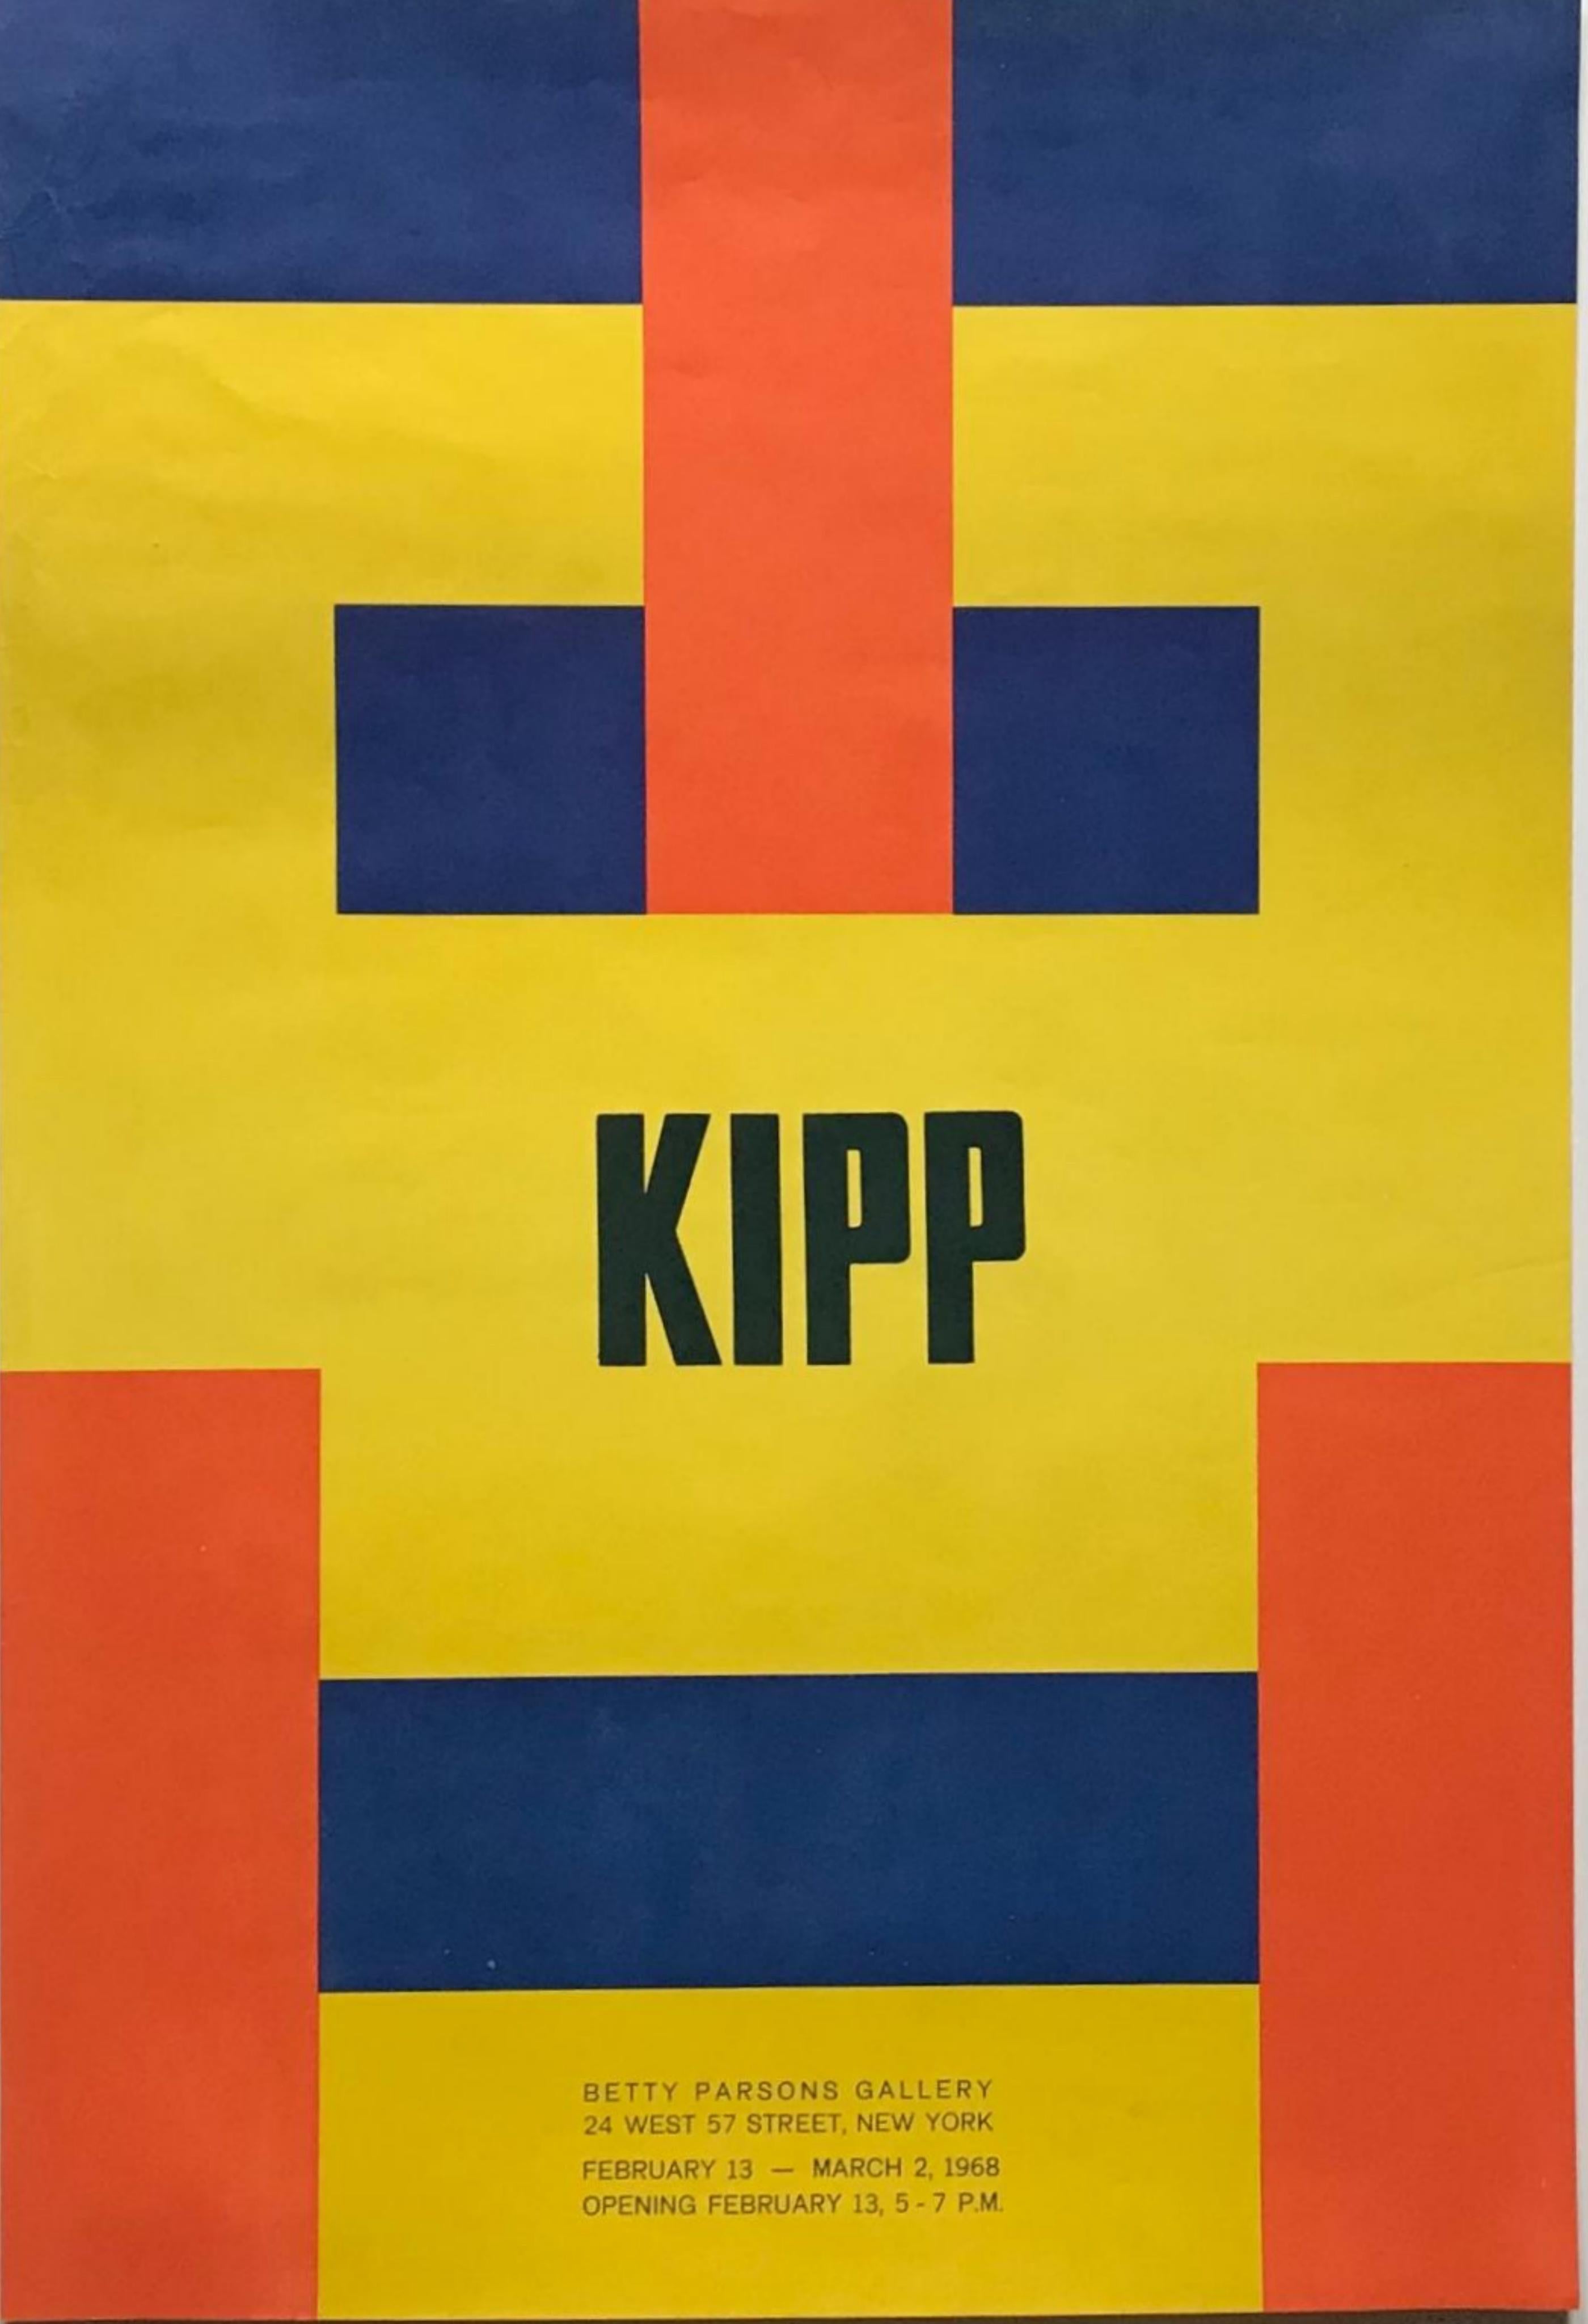 Historisches, originales Betty Parsons-Galerieplakat (Minimalismus, Konstruktivismus)  – Art von Lyman Kipp 